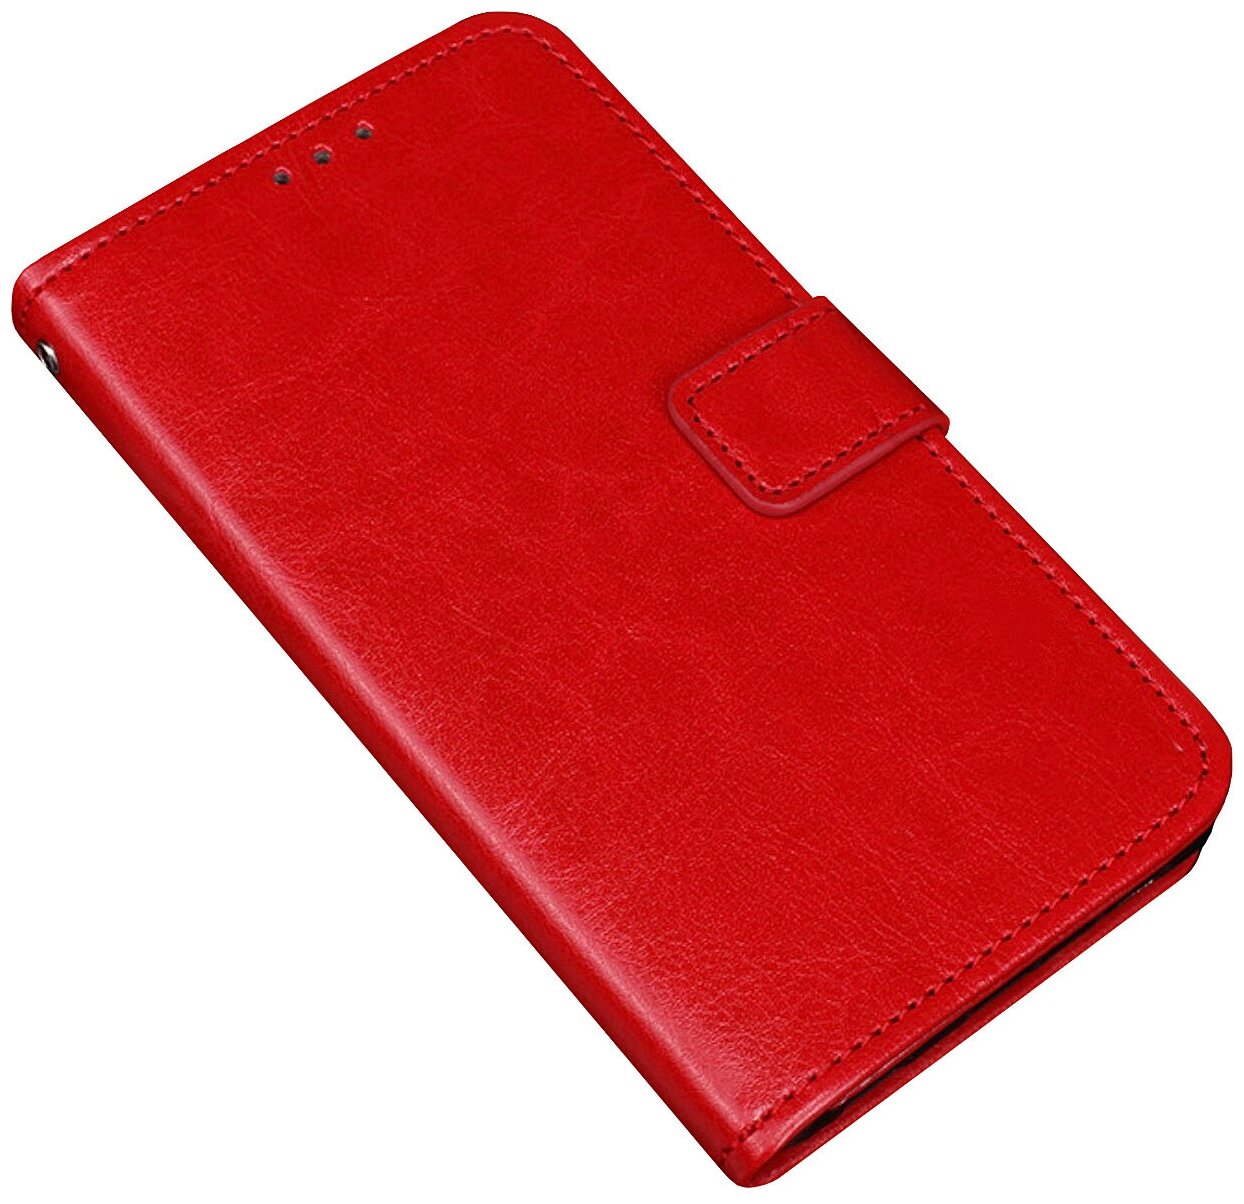 Чехол-книжка Чехол. ру для Samsung Galaxy A20 с мульти-подставкой застёжкой и визитницей красный